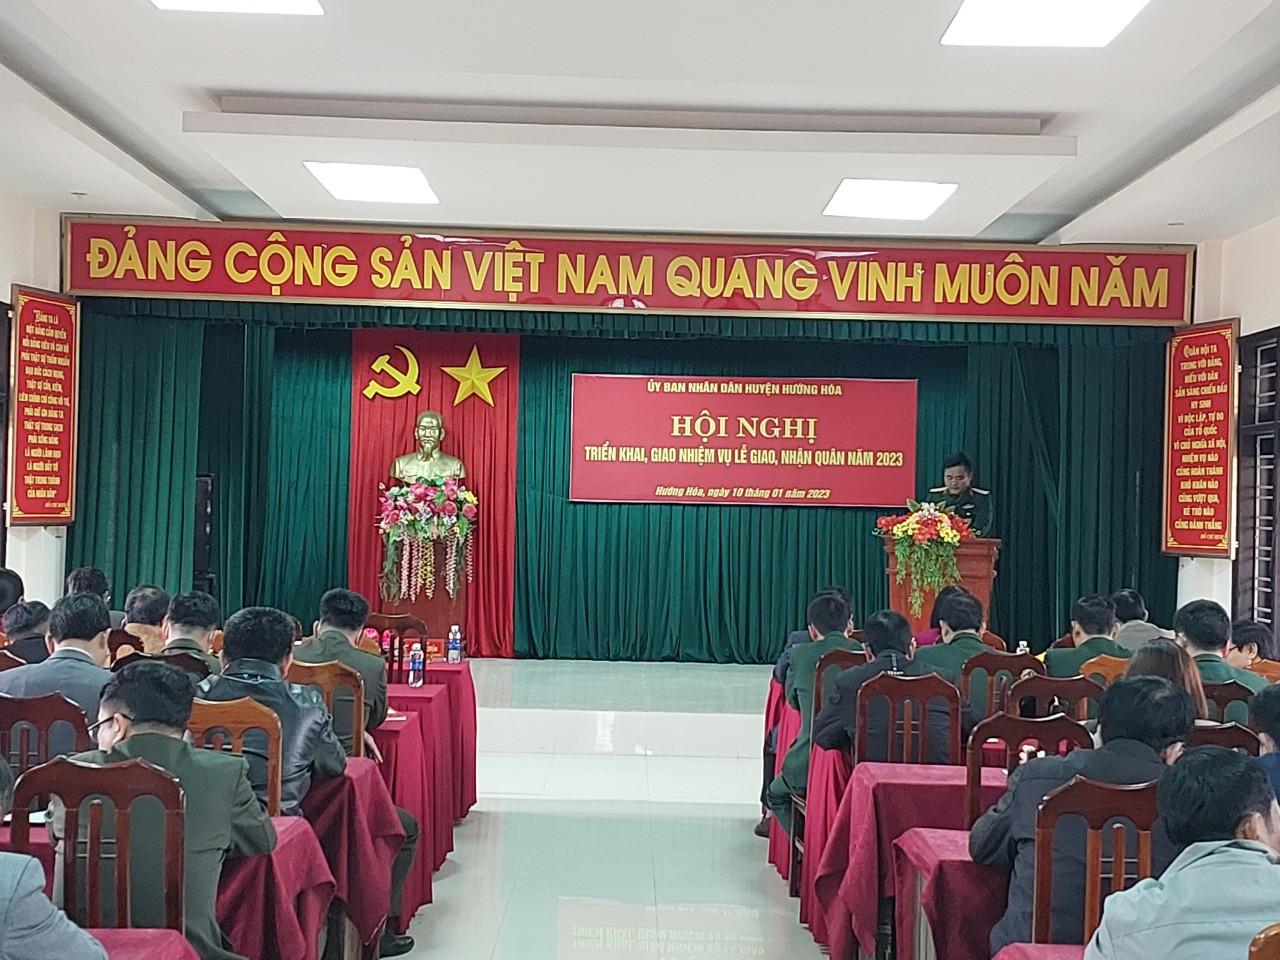 Hội đồng nghĩa vụ Quân sự huyện Hướng Hóa: Giao nhiệm vụ tổ chức Lễ giao nhận quân năm 2023.